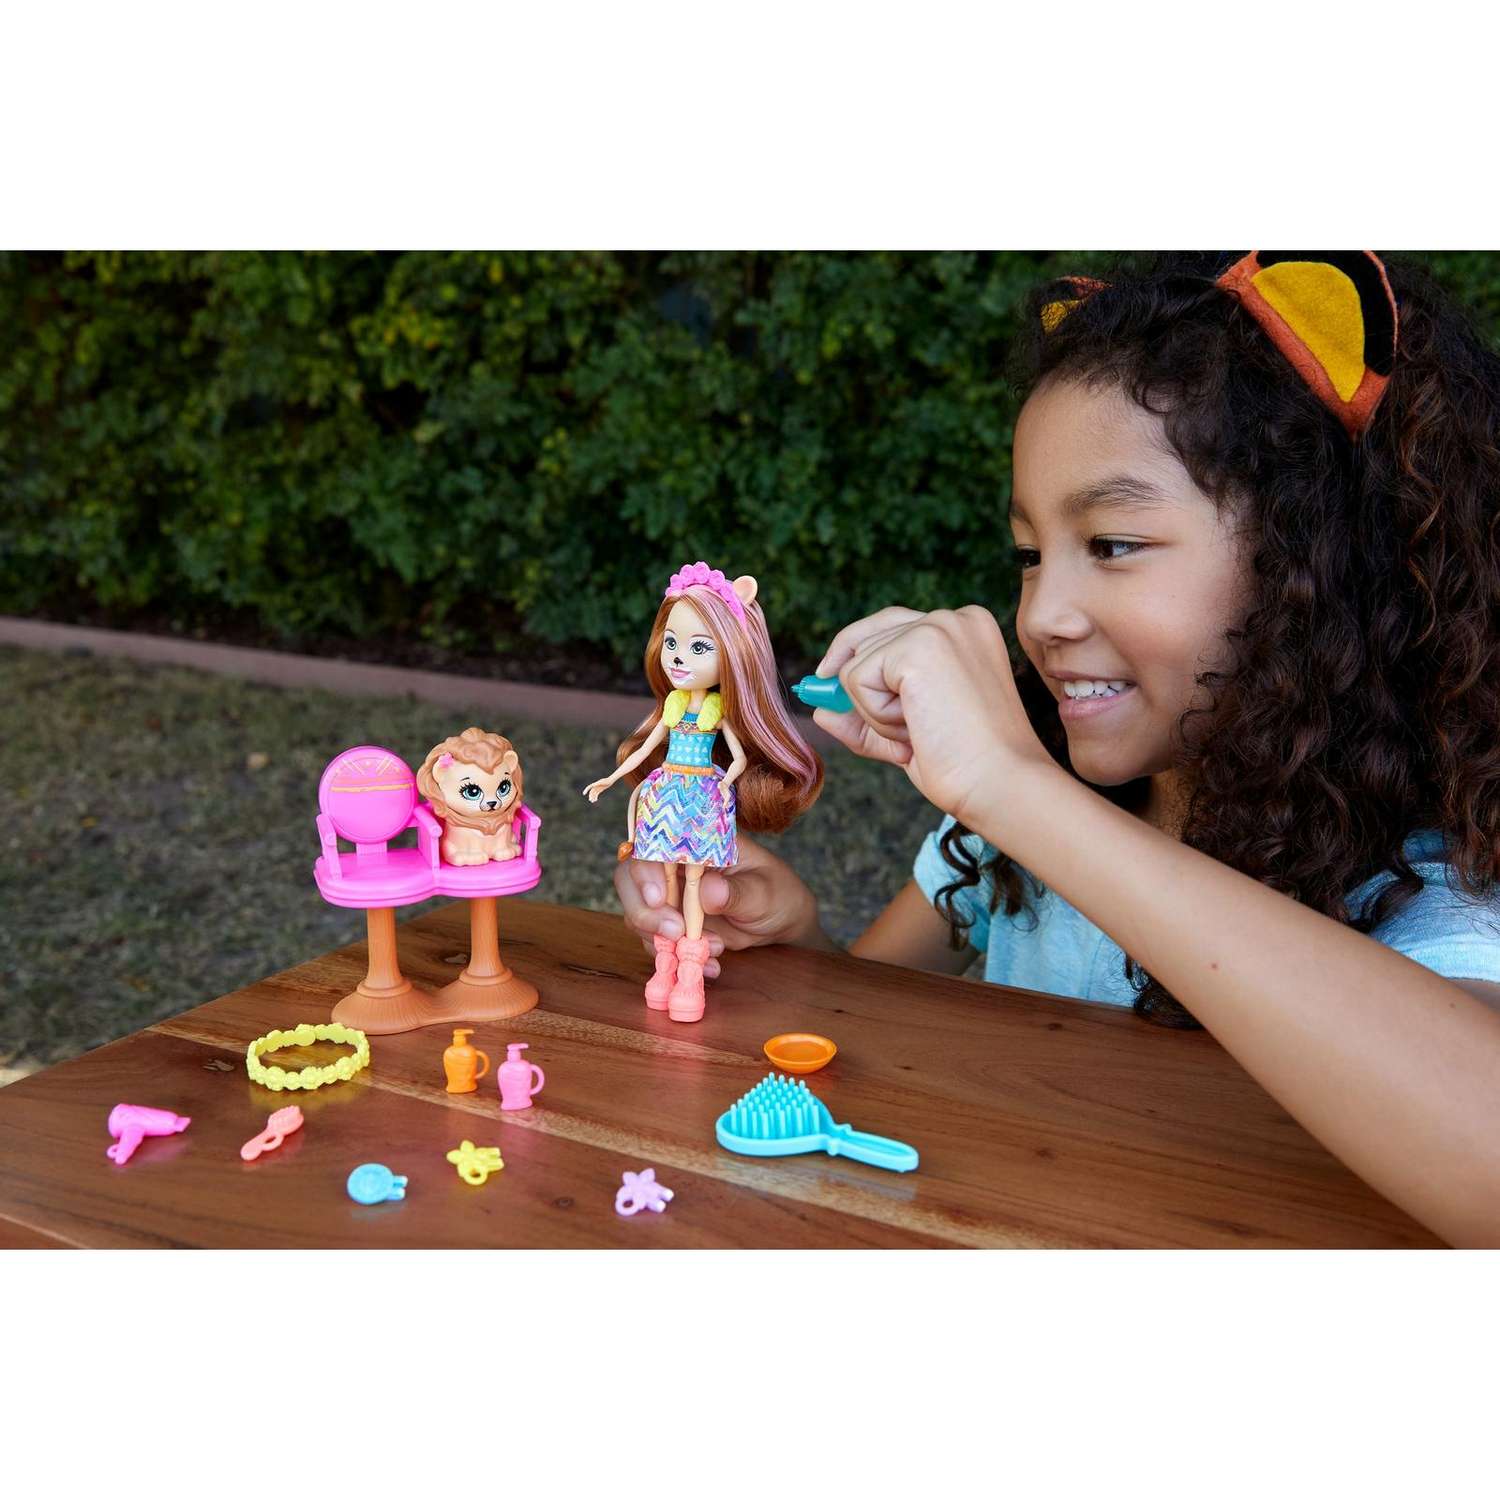 Набор игровой Enchantimals кукла+питомец с аксессуарами Стильный салон GTM29 GJX35 - фото 11